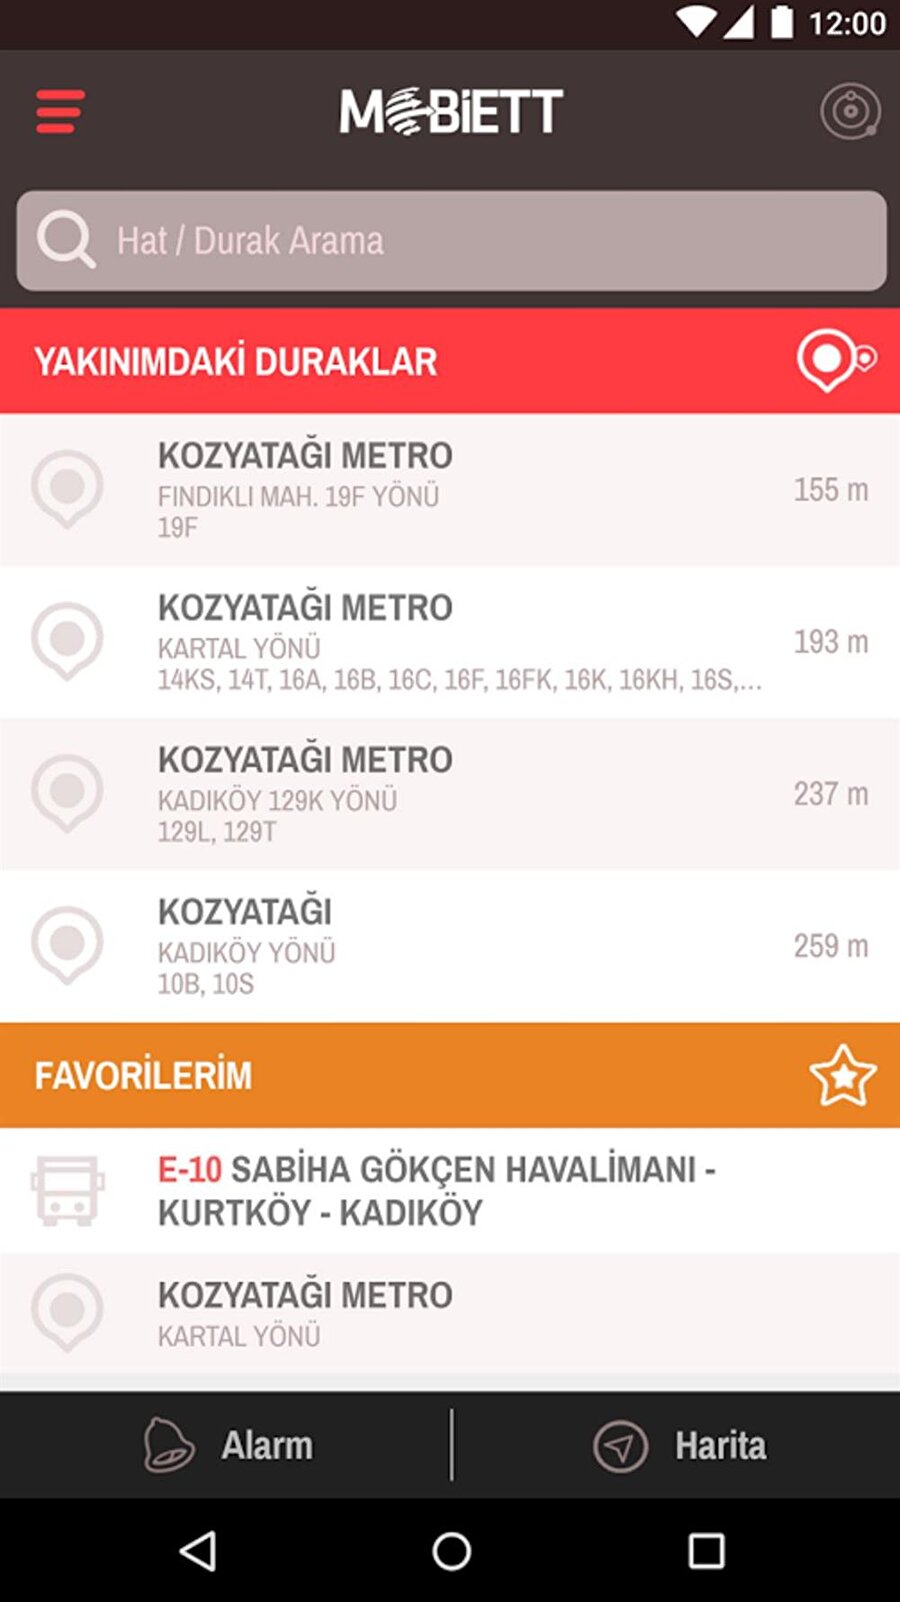 Mobiett
Hat ve durak arama ya da sorgulama kısmındaki en başarılı seçeneklerden biri de Mobiett. Bu akıllı durak uygulaması vasıtasıyla Türkiye'de bulunan tüm toplu ulaşım bilgilerine kolayca erişebilirsiniz. 

Mobiett uygulamasını Android için buradan iPhone için de buradan indirebilirsiniz.